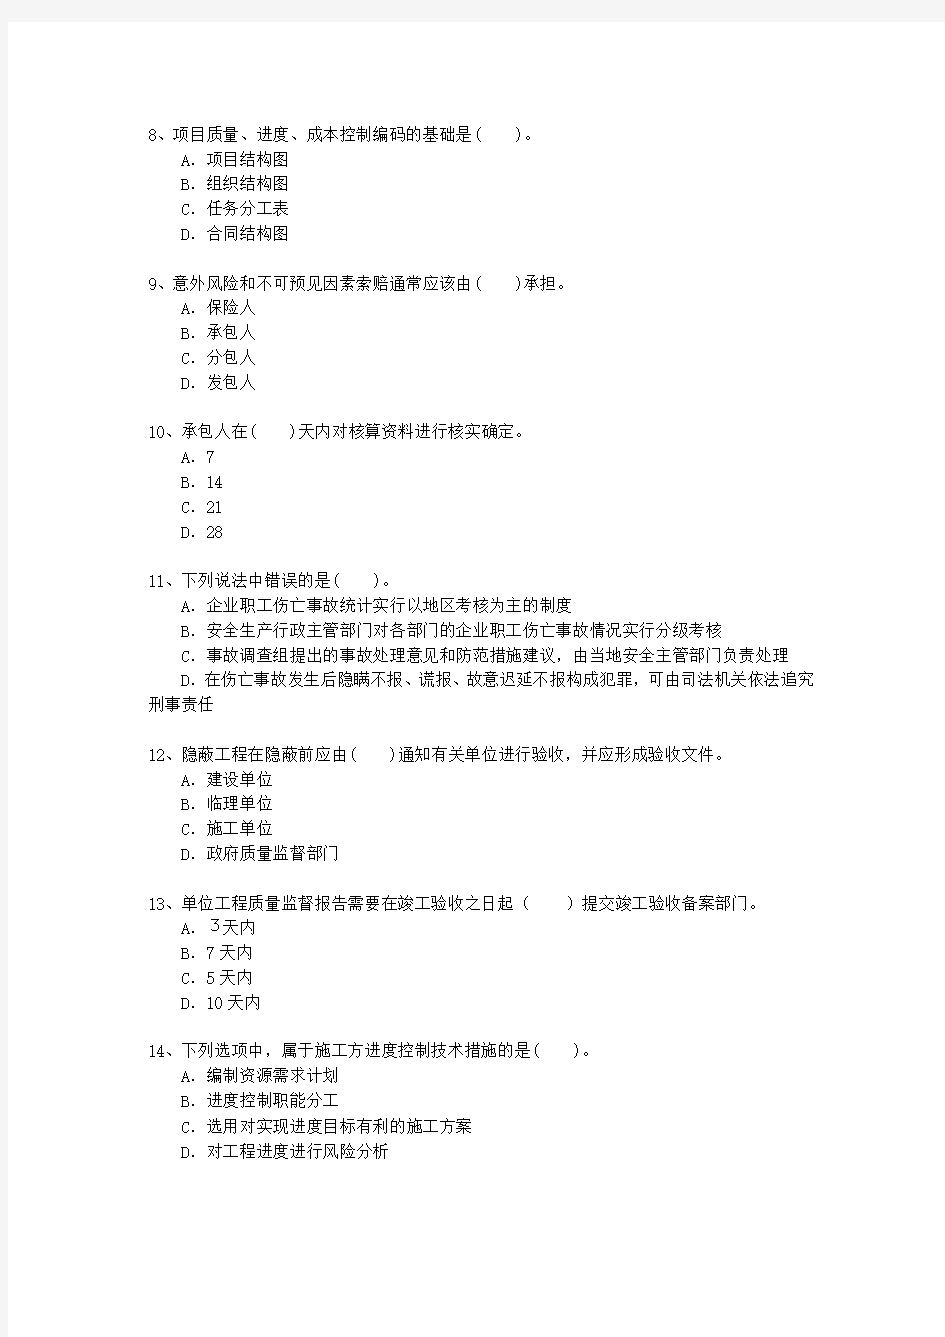 2015三级河南省建造师(必备资料)